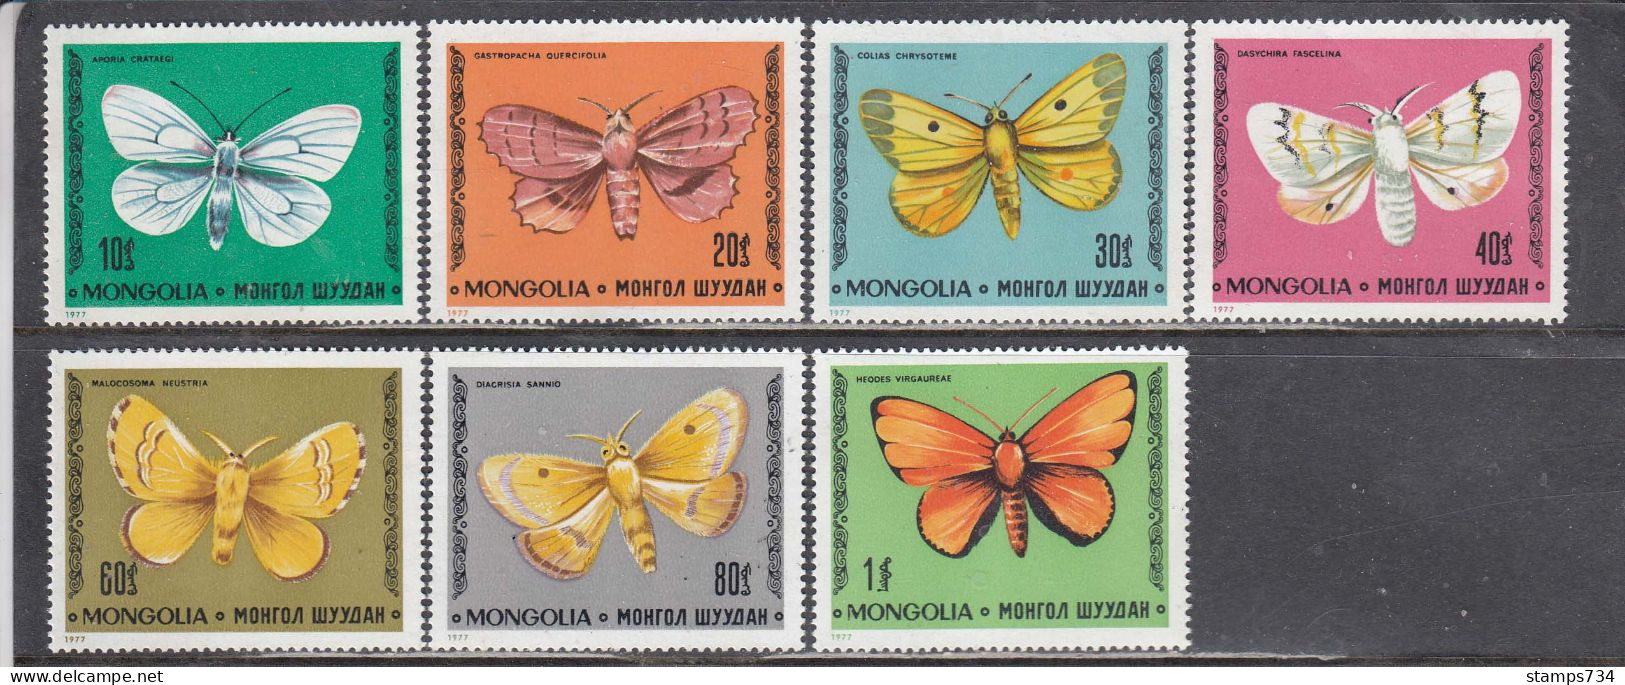 Mongolia 1977 - Butterflies, Mi-Nr. 1099/105, MNH** - Mongolie